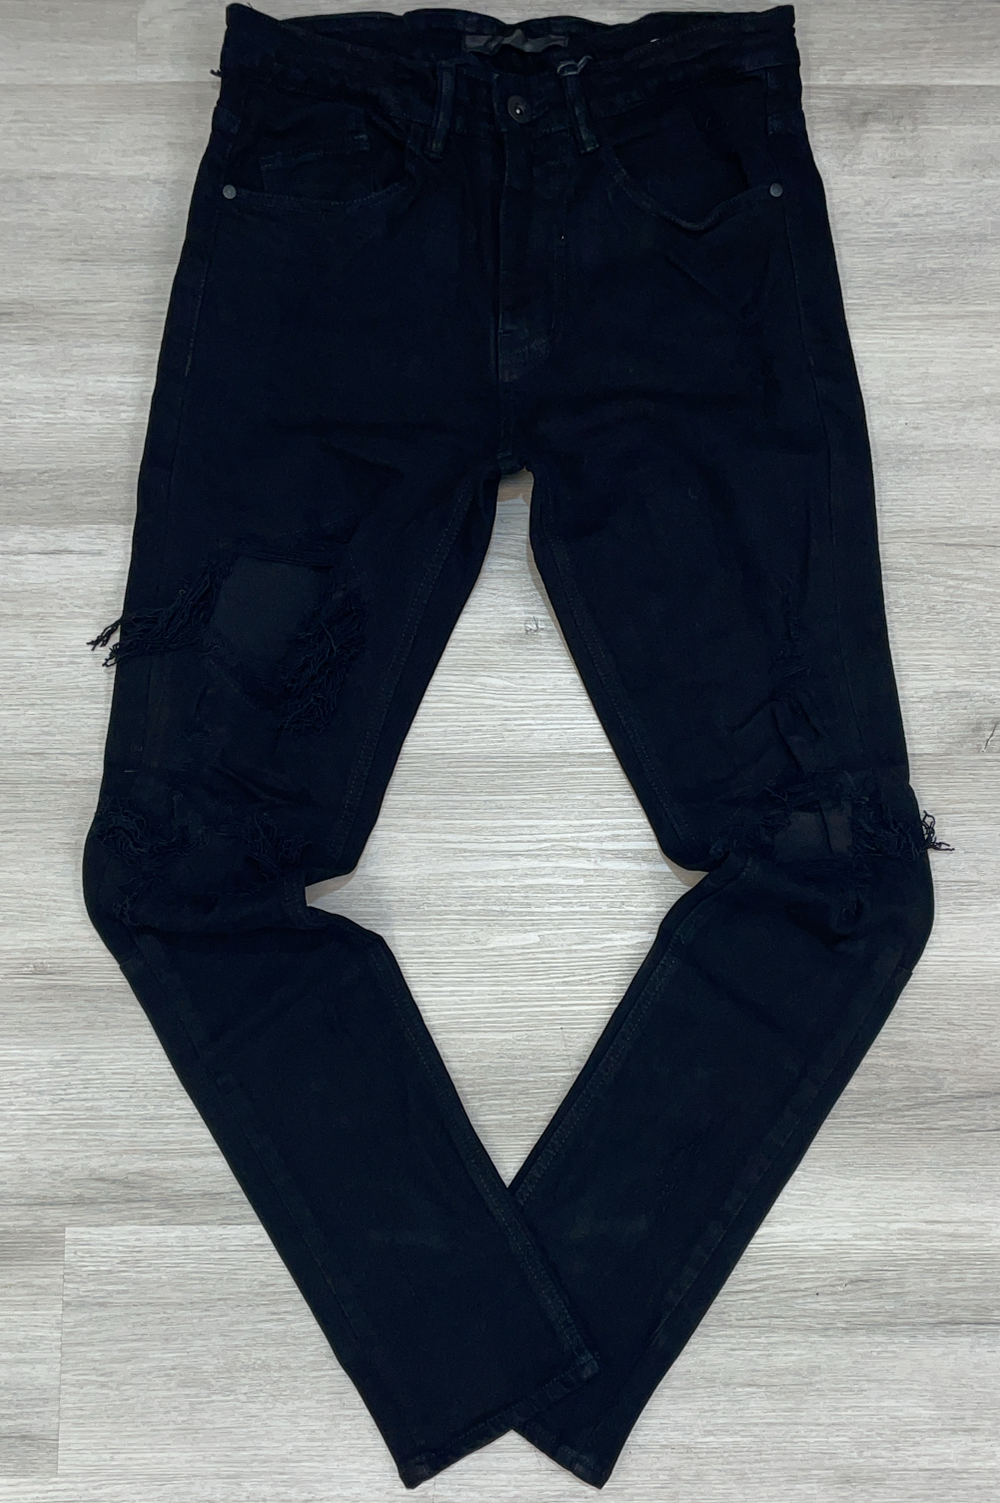 KDNK - self patch pants (black)